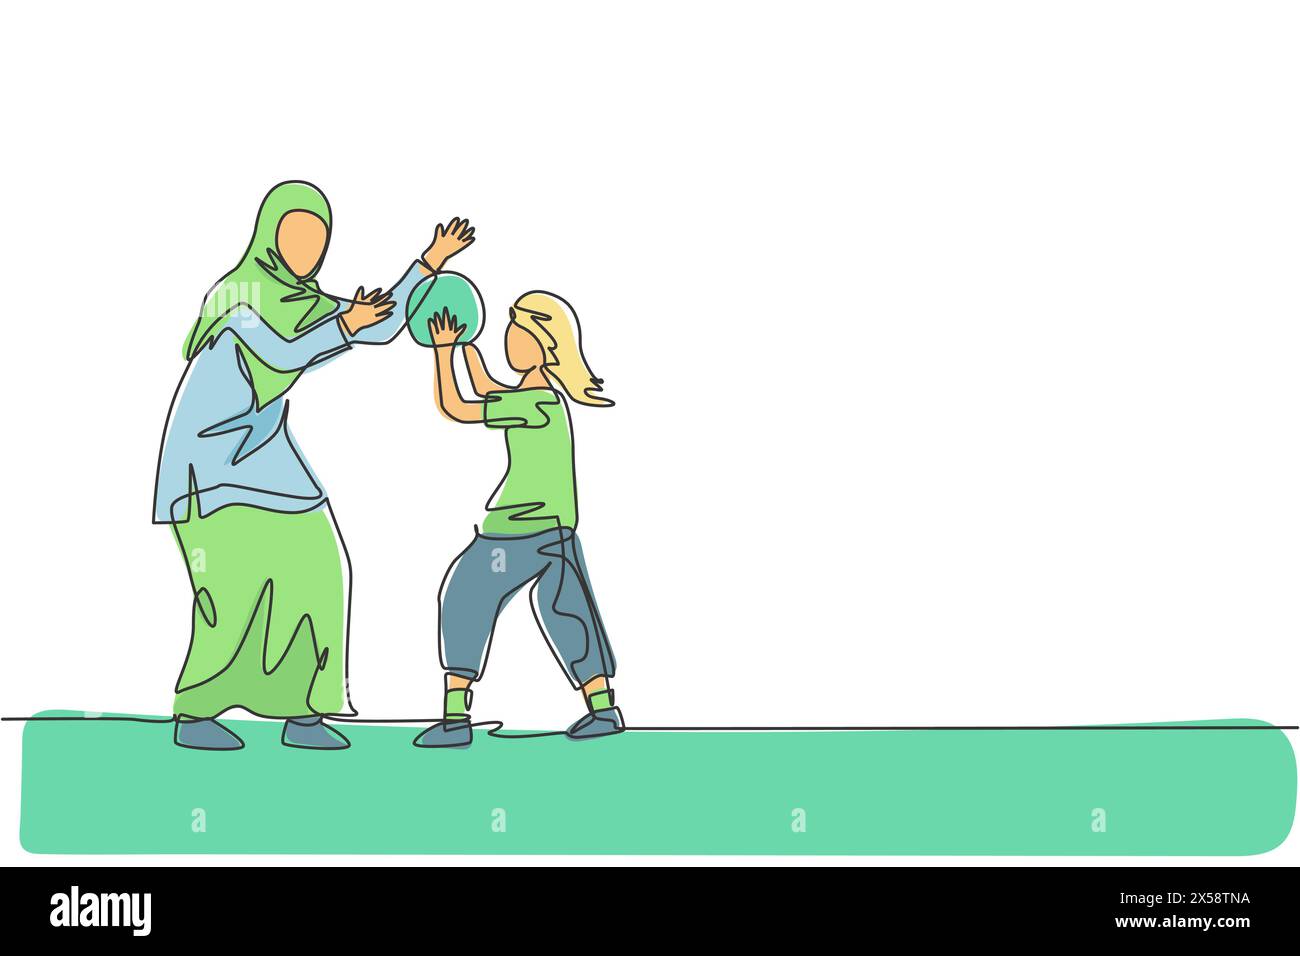 Un disegno continuo della giovane mamma islamica che gioca a basket con la figlia all'Outfield Park. Felice concetto di famiglia araba musulmana. DIN Illustrazione Vettoriale